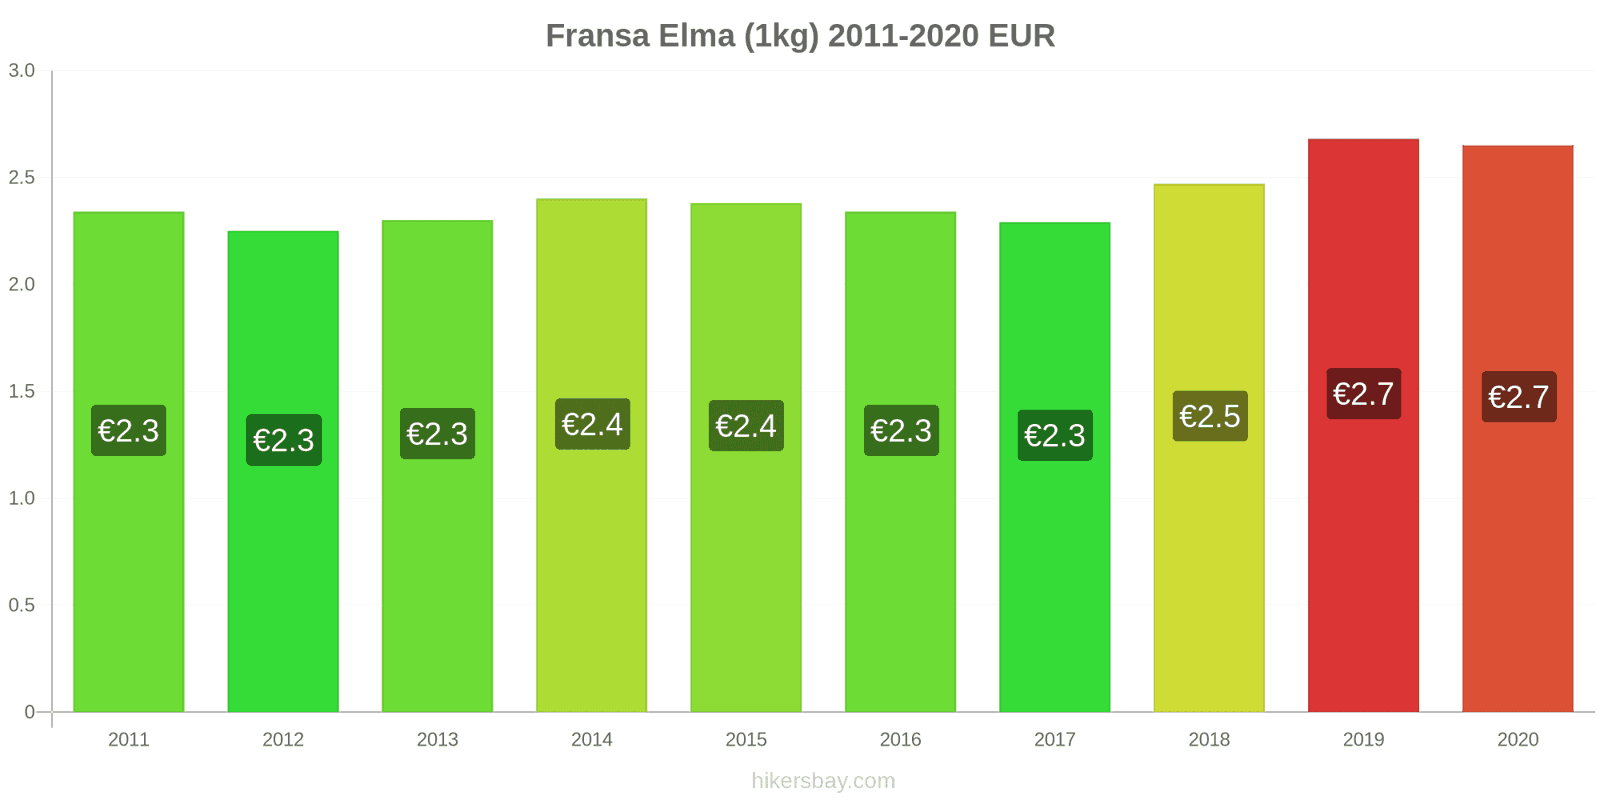 Fransa fiyat değişiklikleri Elma (1kg) hikersbay.com